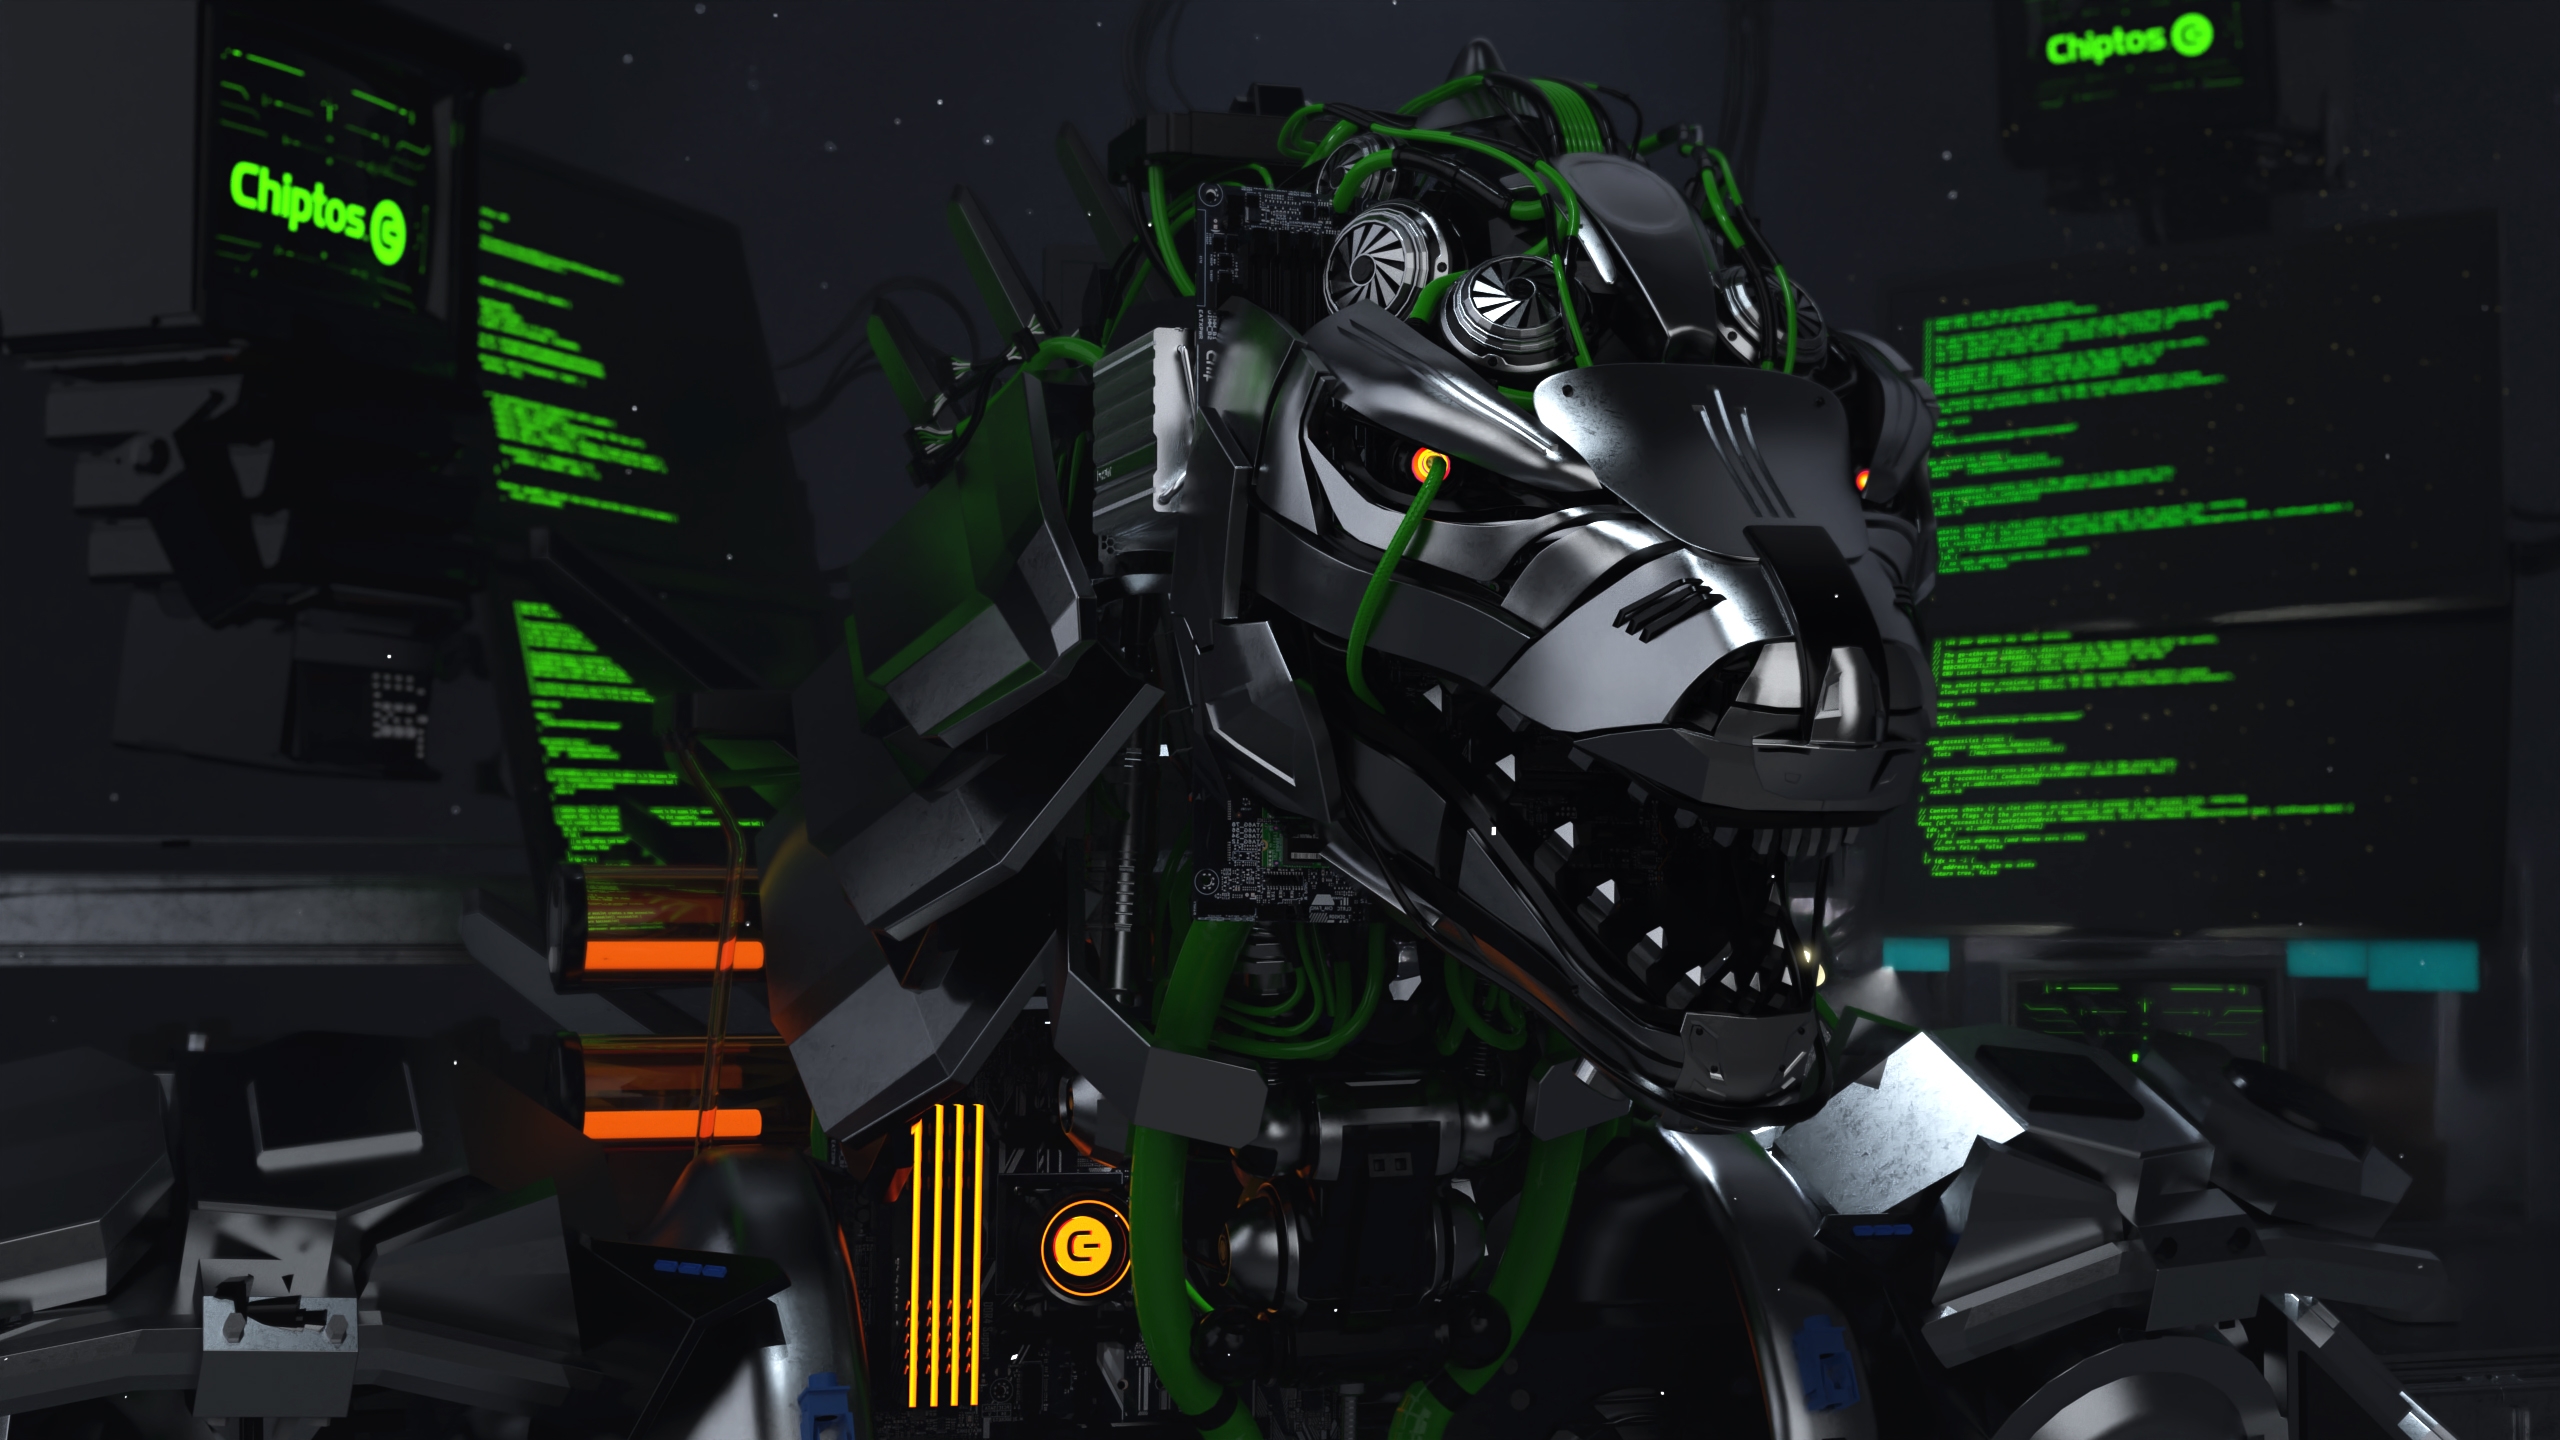 Mecha Godzilla Godzilla Hacking Technology Robot Computer Tech 2560x1440